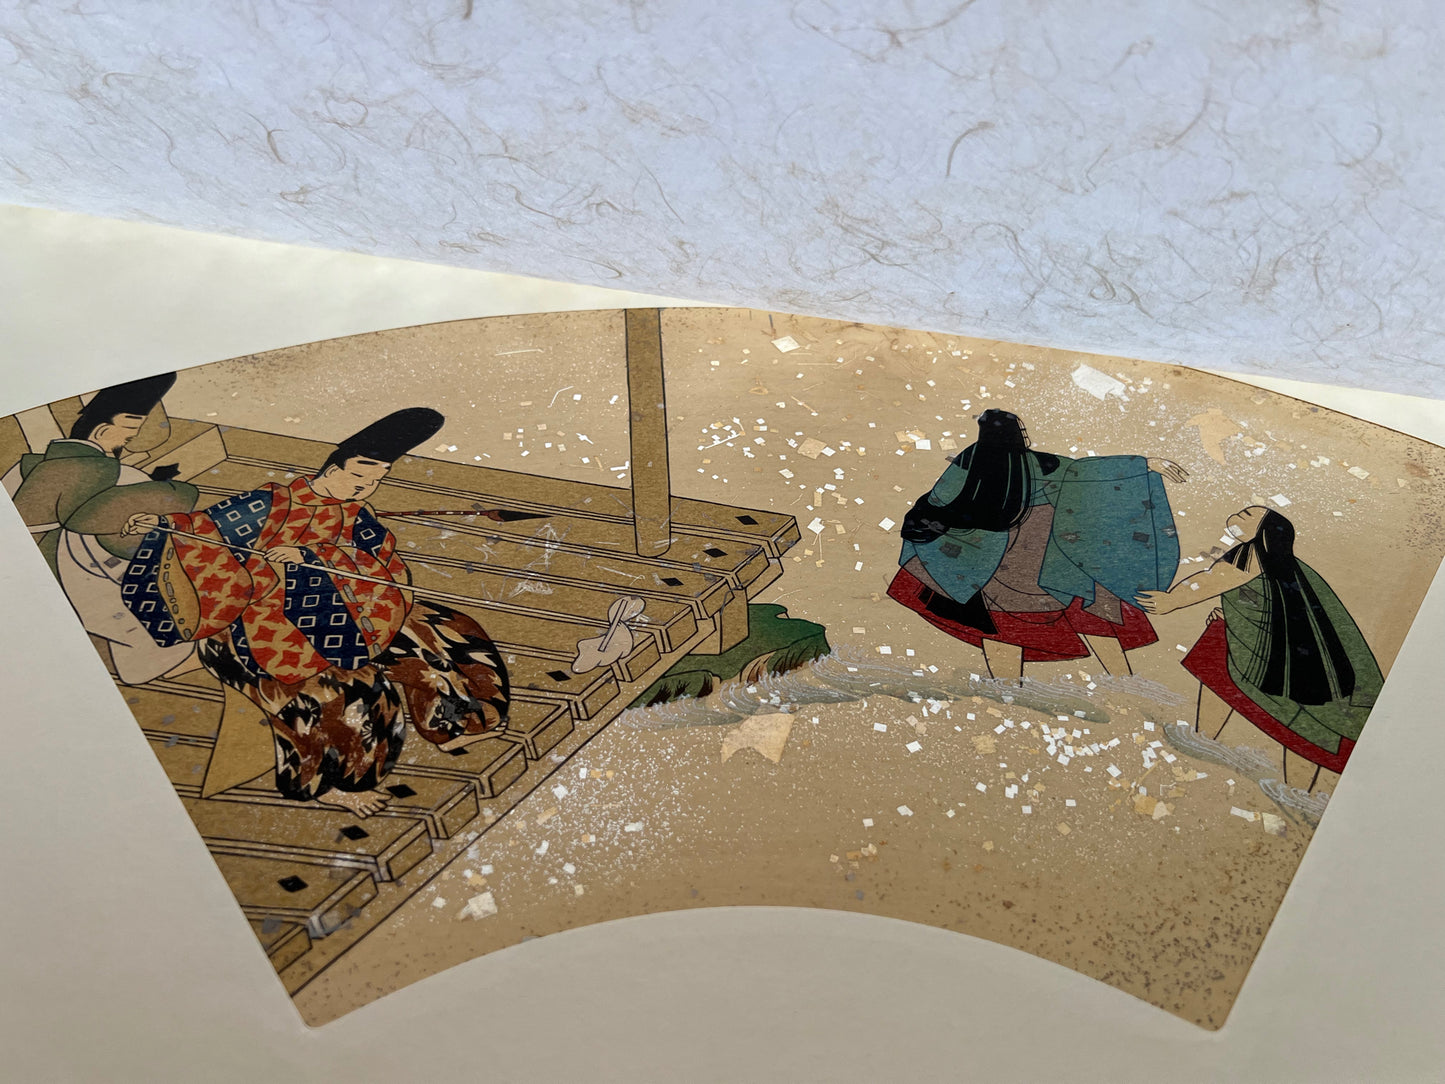 Estampe japonaise en forme d'éventail parsemée de fragments d'or et d'argent, deux hommes nettoient une terrasse au bord de l'eau pendant que deux femmes se baignent dans la rivière, série sutra du lotus, papier de protection.